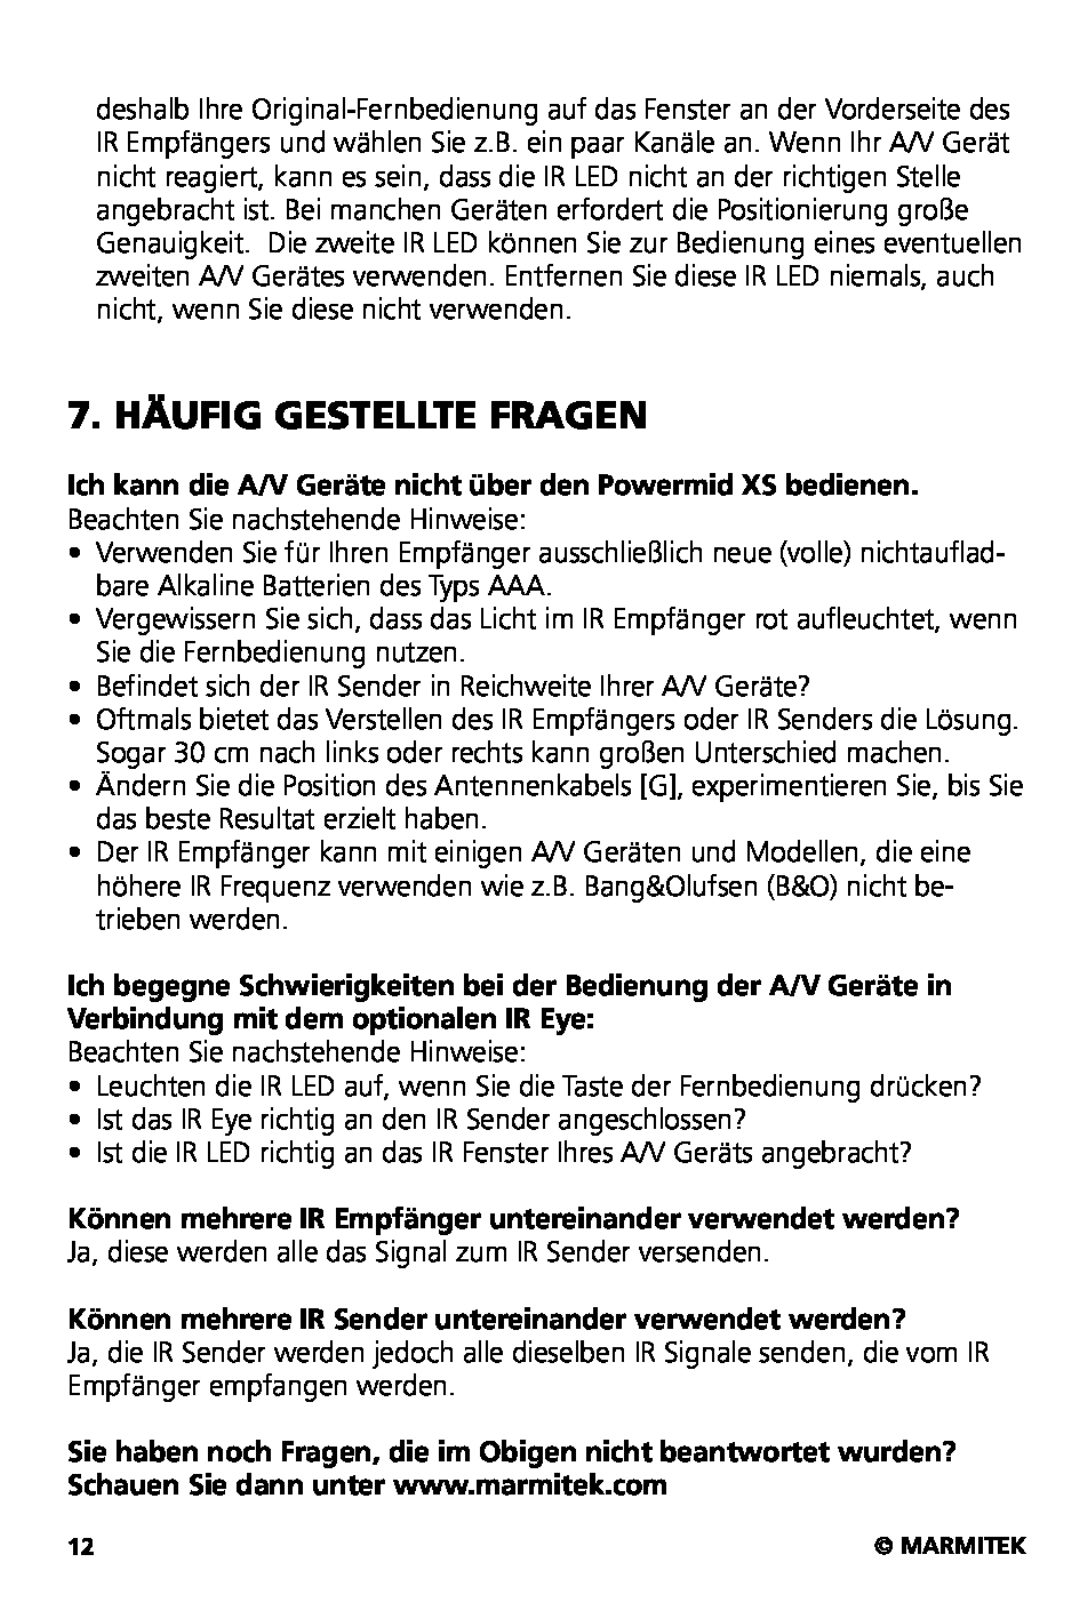 Marmitek XS user manual 7. HÄUFIG GESTELLTE FRAGEN, Können mehrere IR Sender untereinander verwendet werden? 